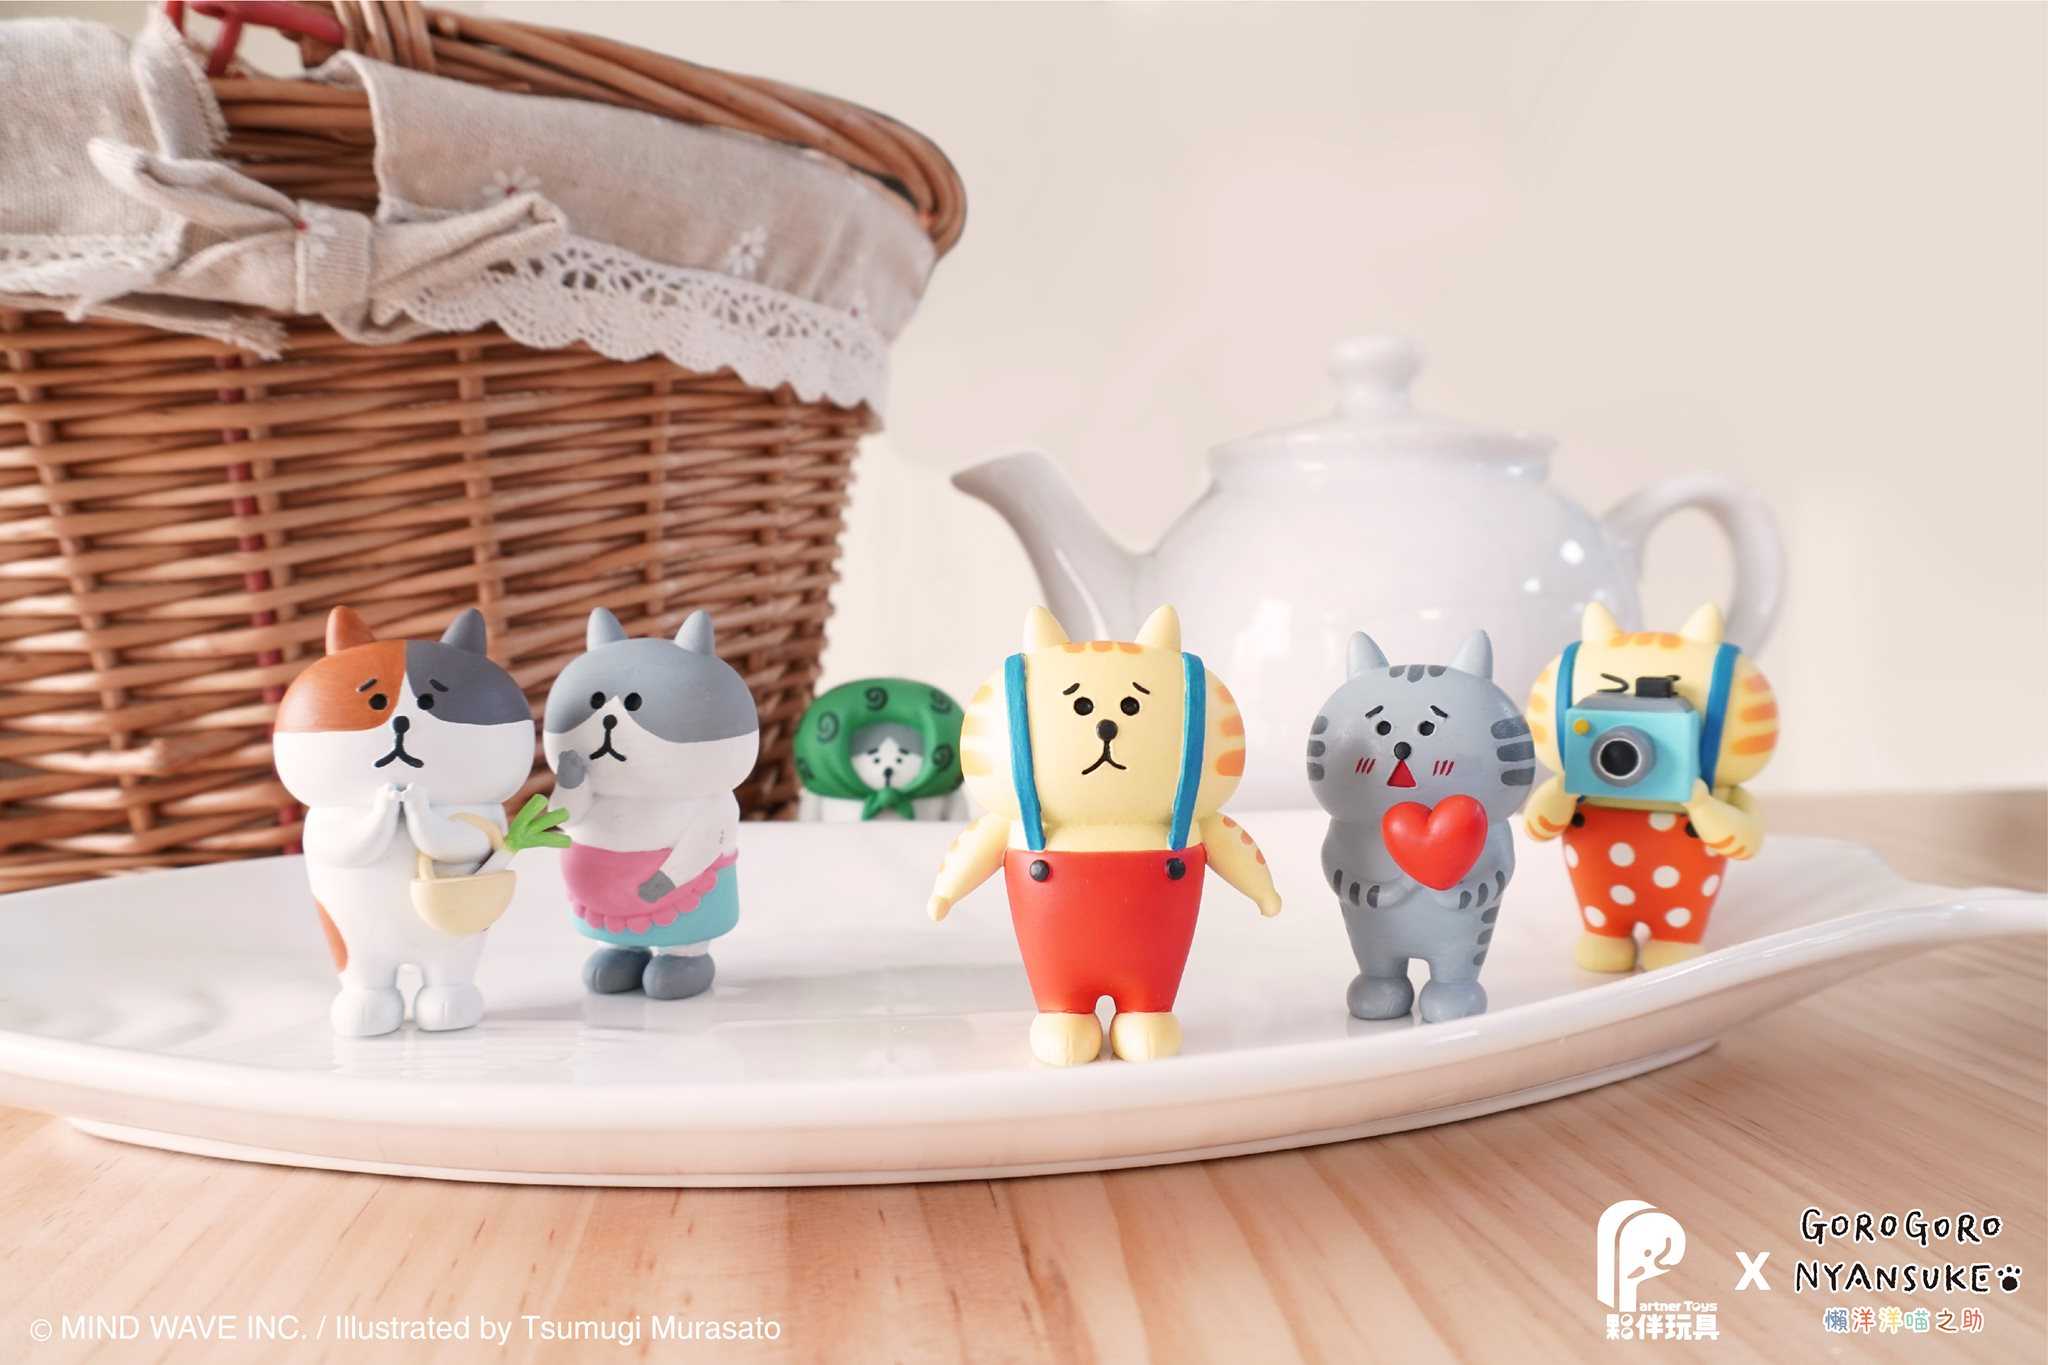 【玩具之森】《現貨》 夥伴玩具x日本插畫家 村里つむぎ 吊帶貓 懶洋洋喵之助 扭蛋 轉蛋  (全套六款出售)